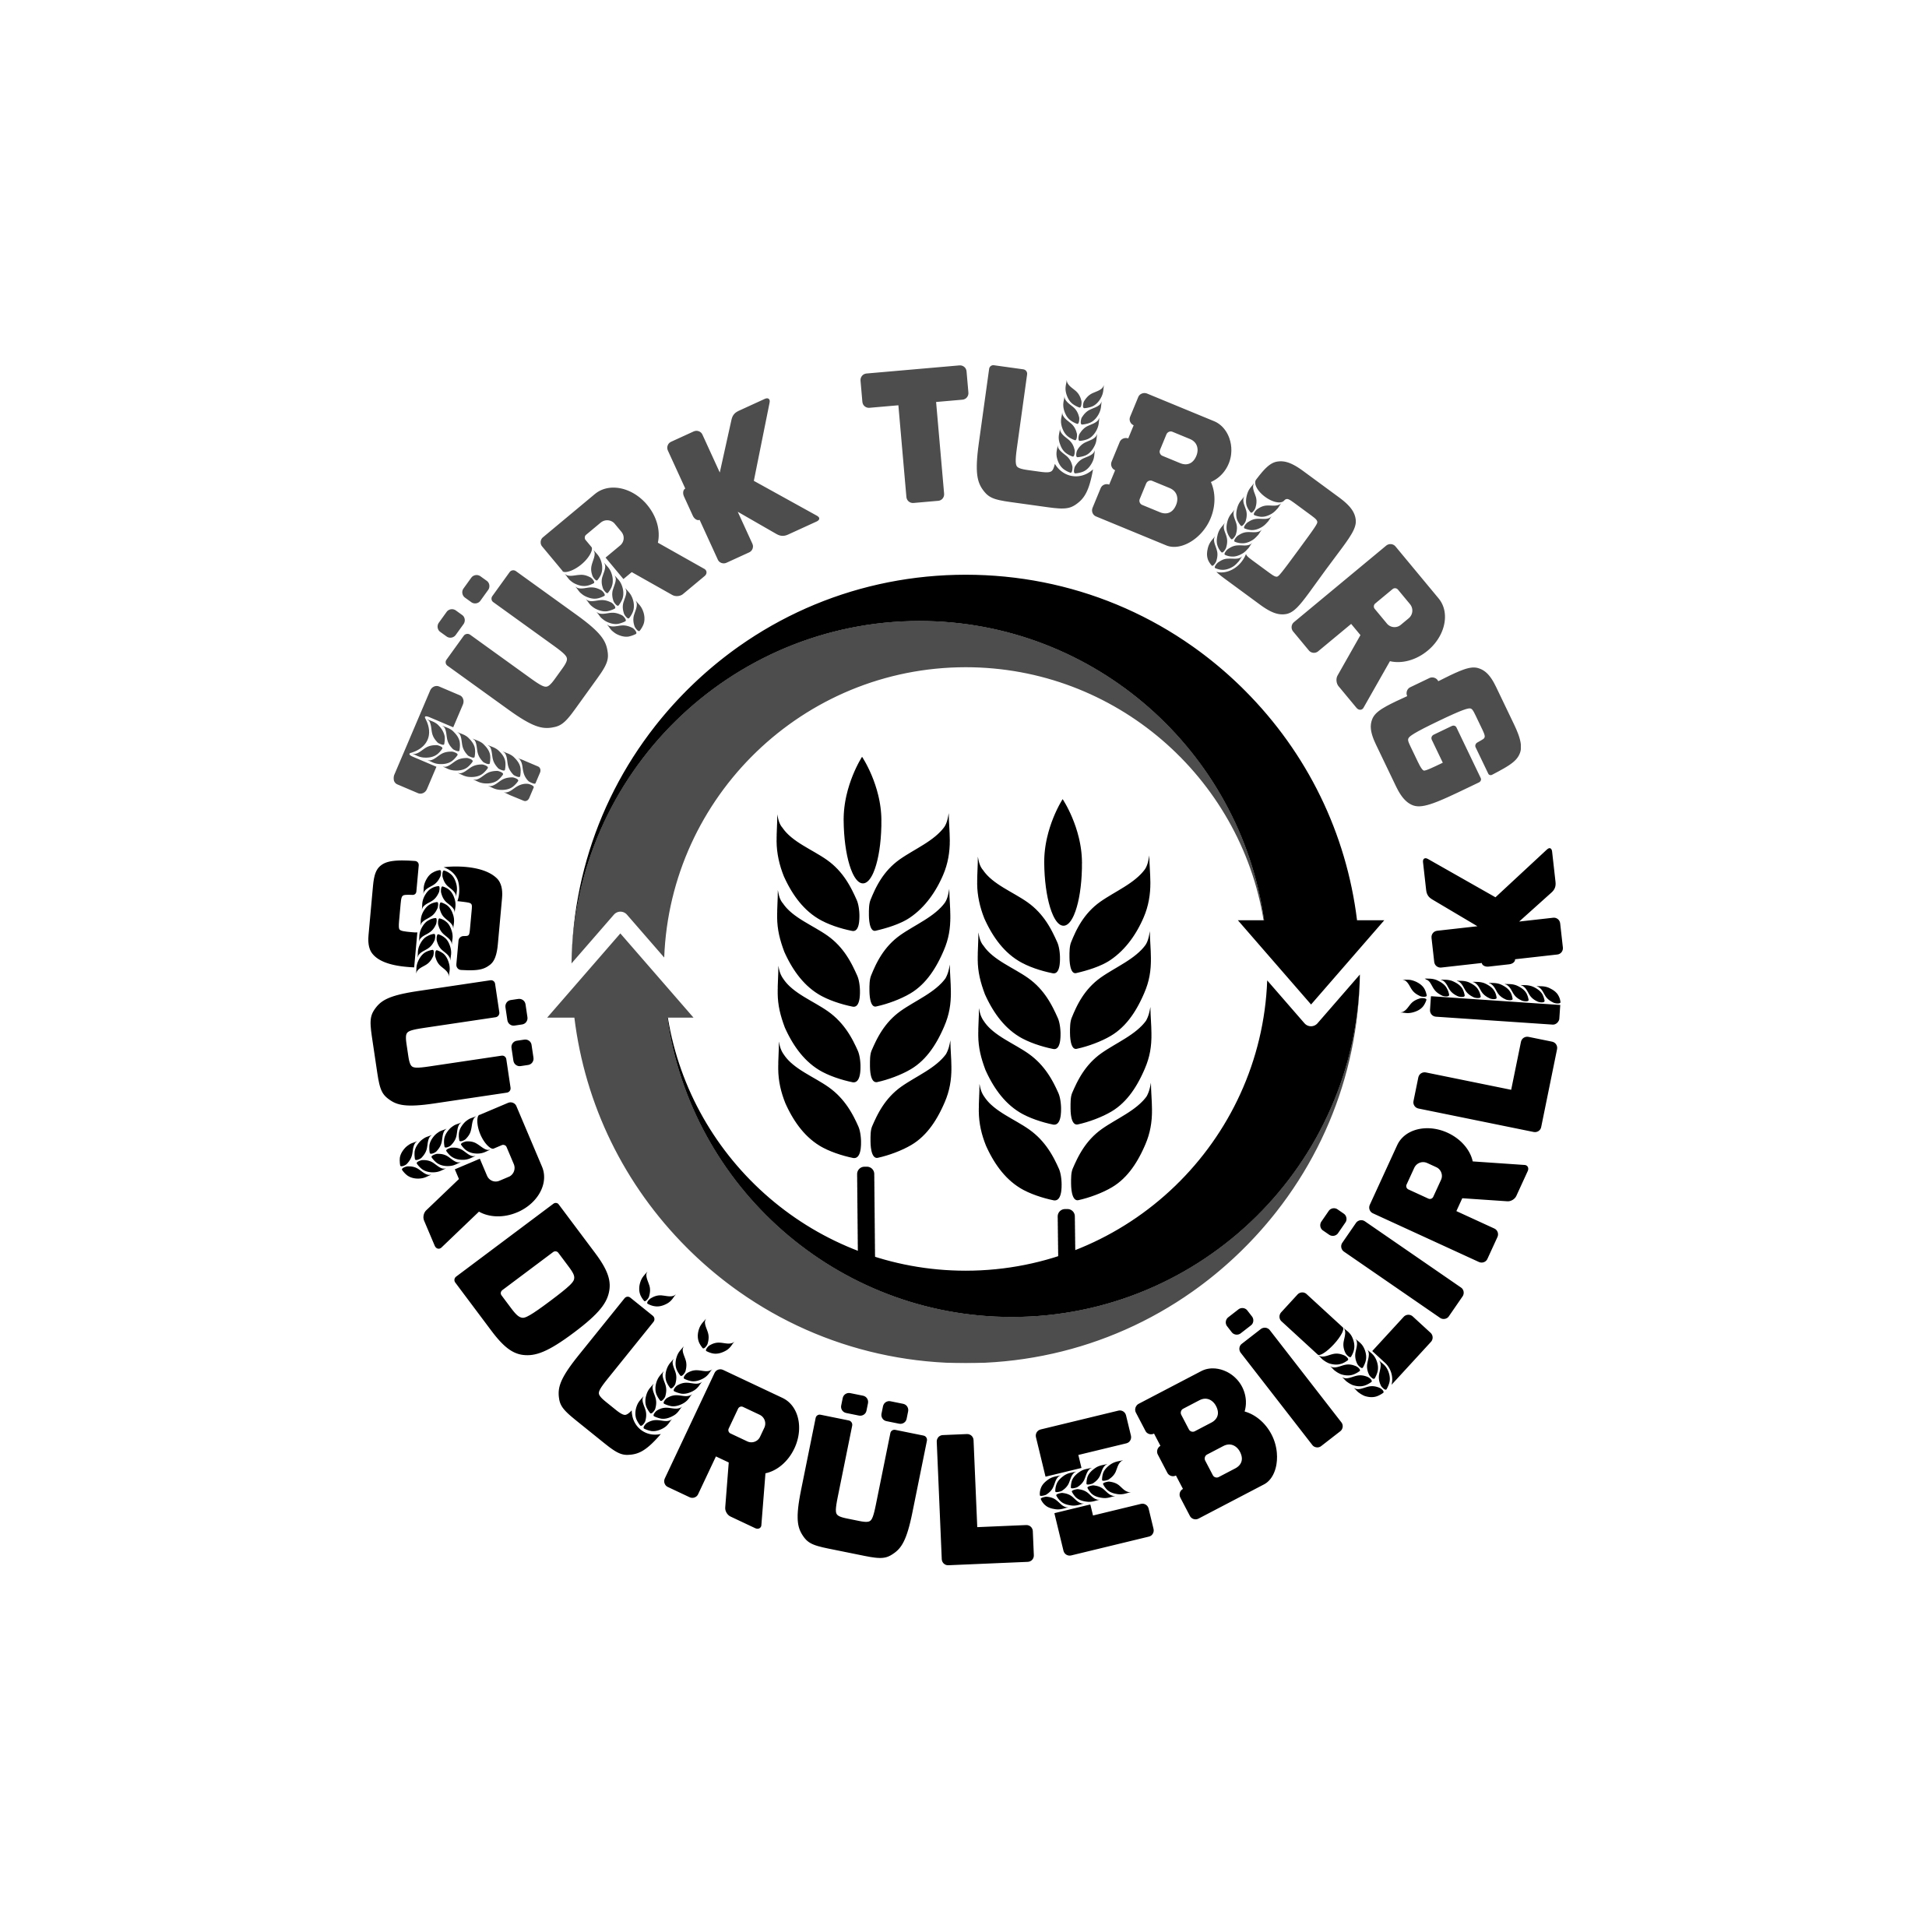 Türk-Tuborg-Surdurulebilirlik-02